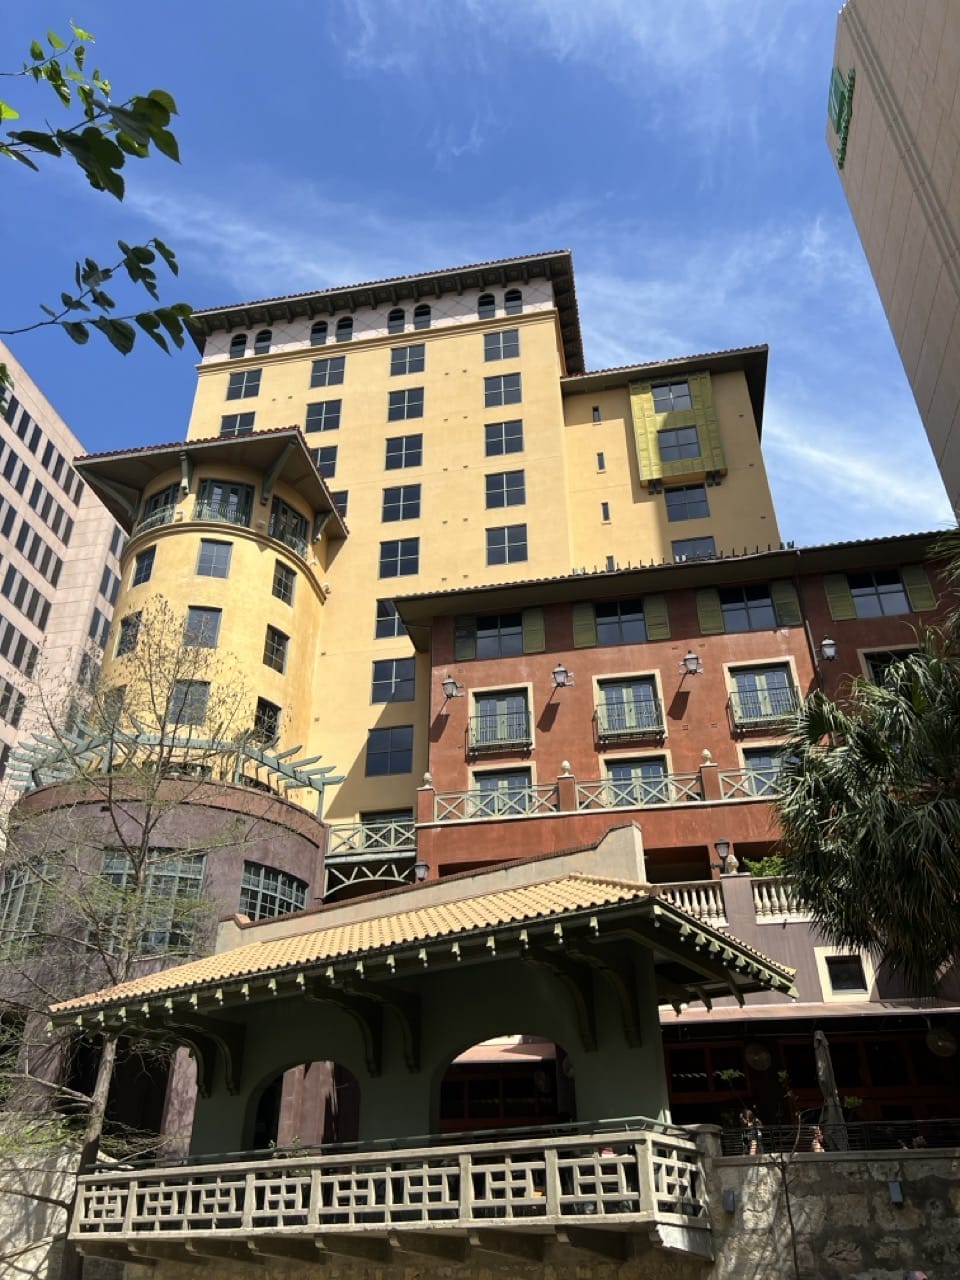 Hotel Valencia San Antonio Riverwalk hotel with balconies